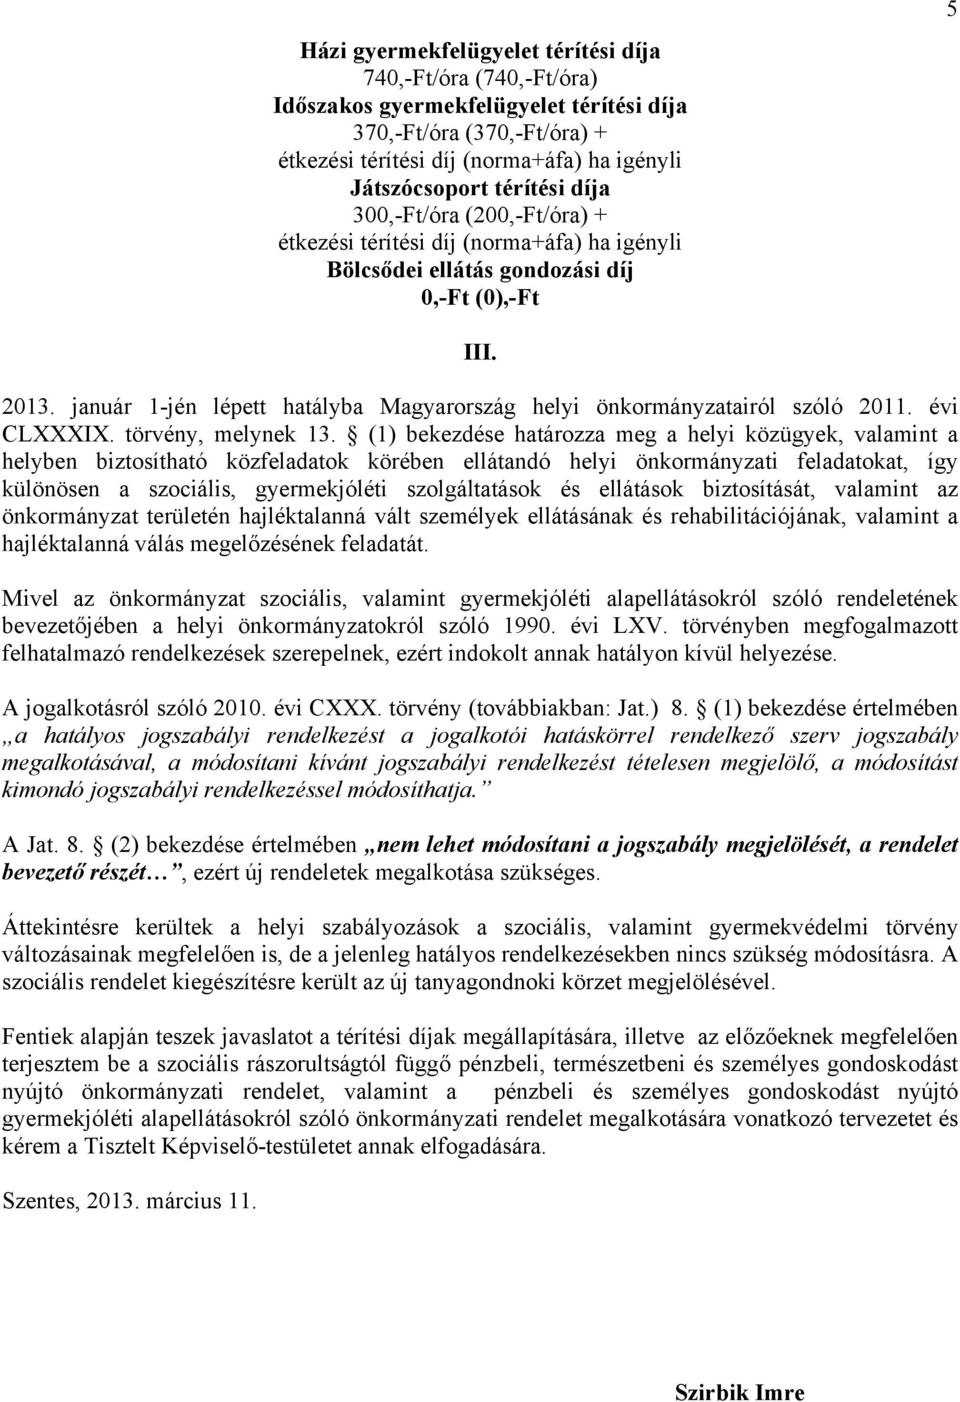 január 1-jén lépett hatályba Magyarország helyi önkormányzatairól szóló 2011. évi CLXXXIX. törvény, melynek 13.